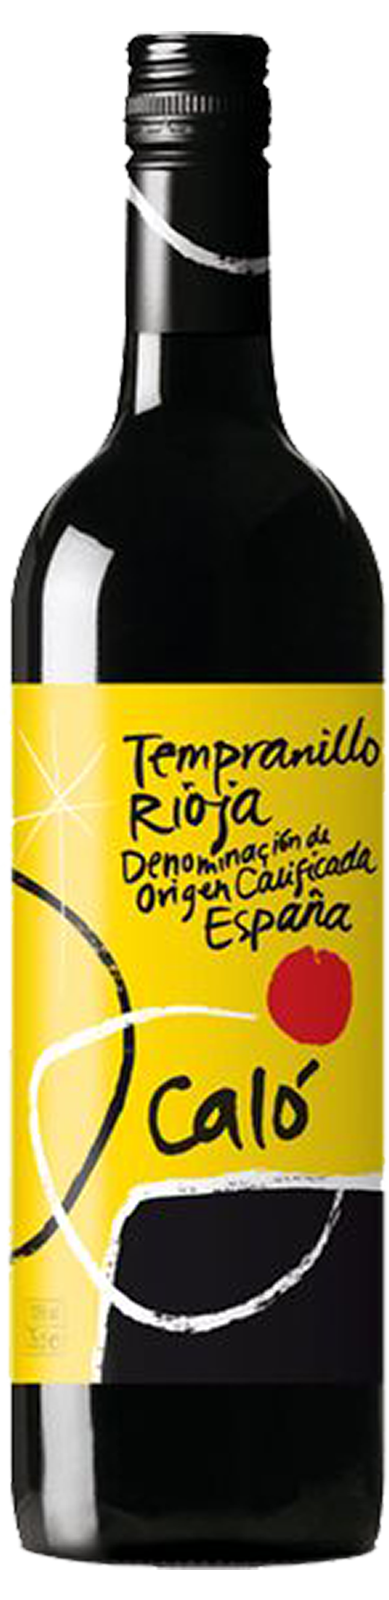 Calo Rioja Tempranillo